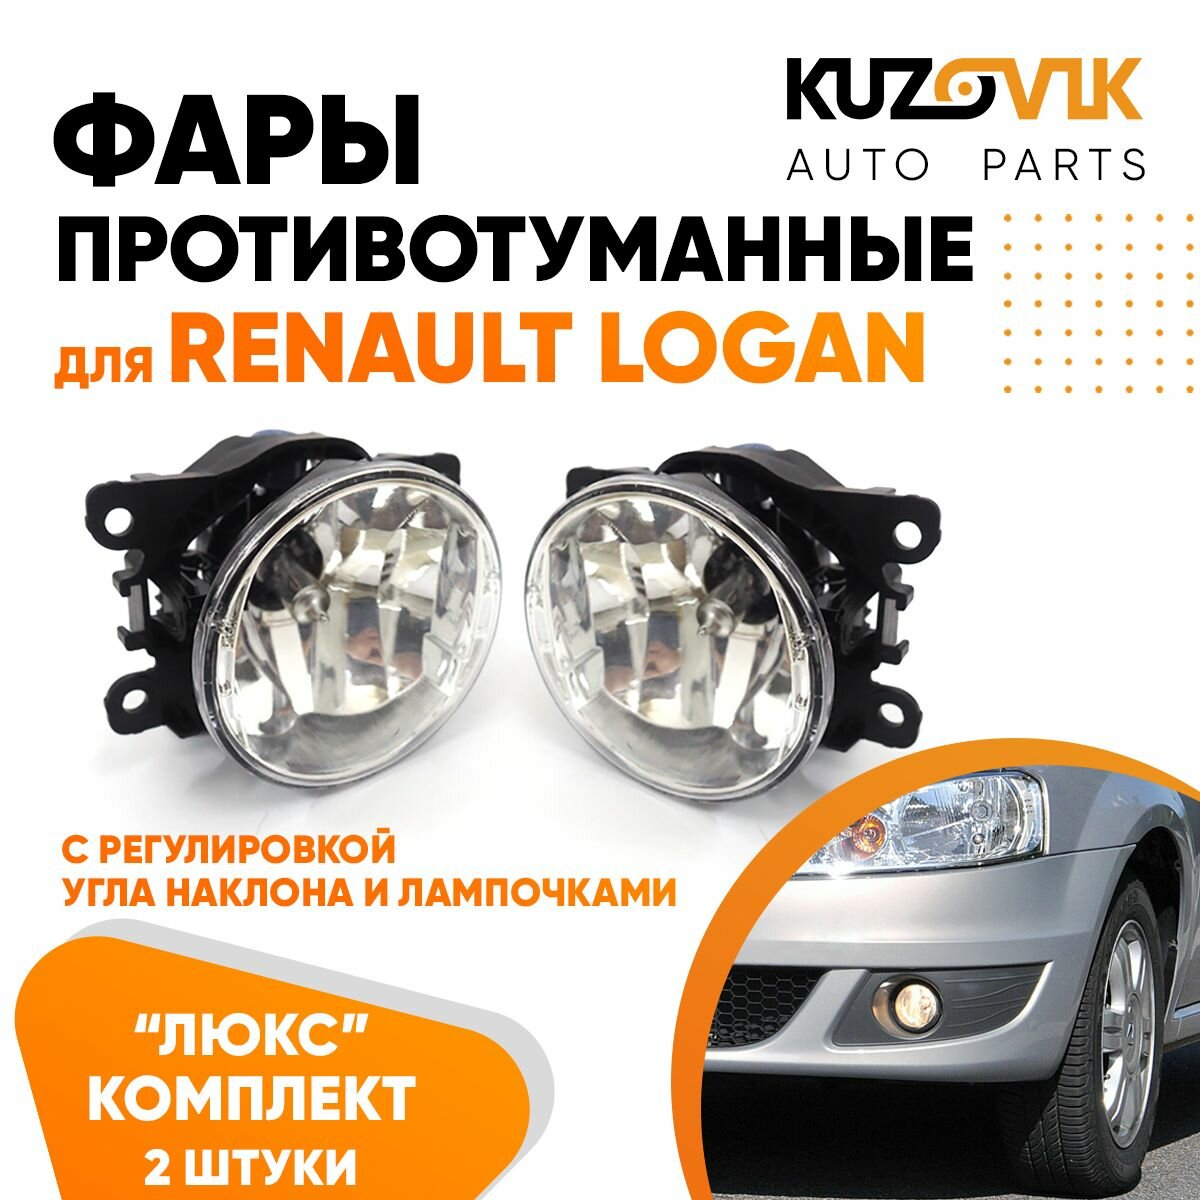 Фары противотуманные комплект Renault Logan Рено Логан (2 штуки) с регулировкой угла наклона туманки ПТФ в комплекте с лампочкой